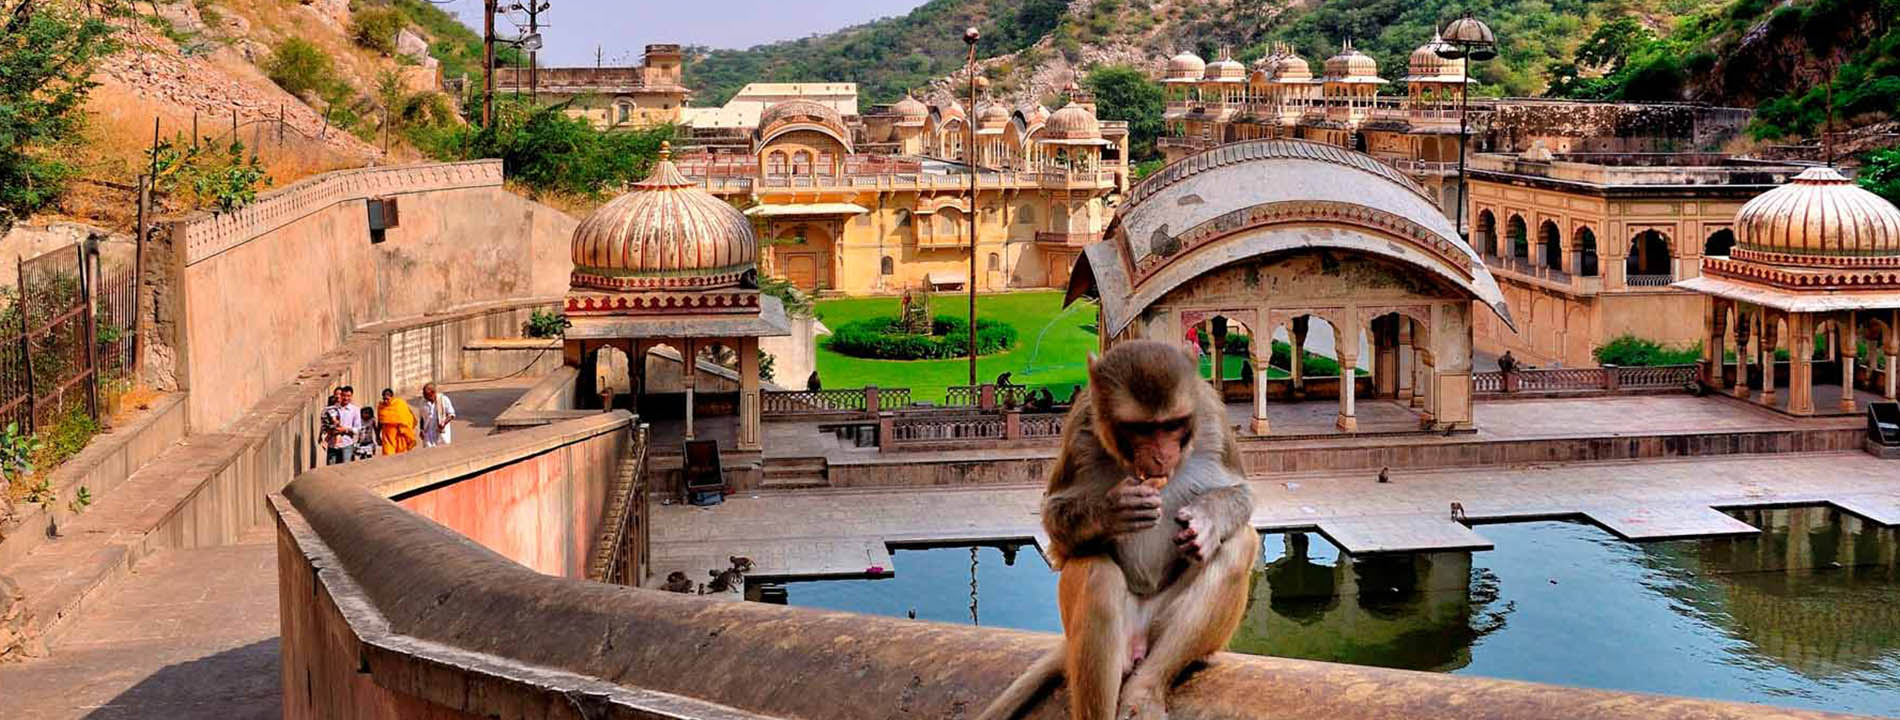 Delhi, Agra, Jaipur, Udaipur, Jodhpur and Jaisalmer 9 Days